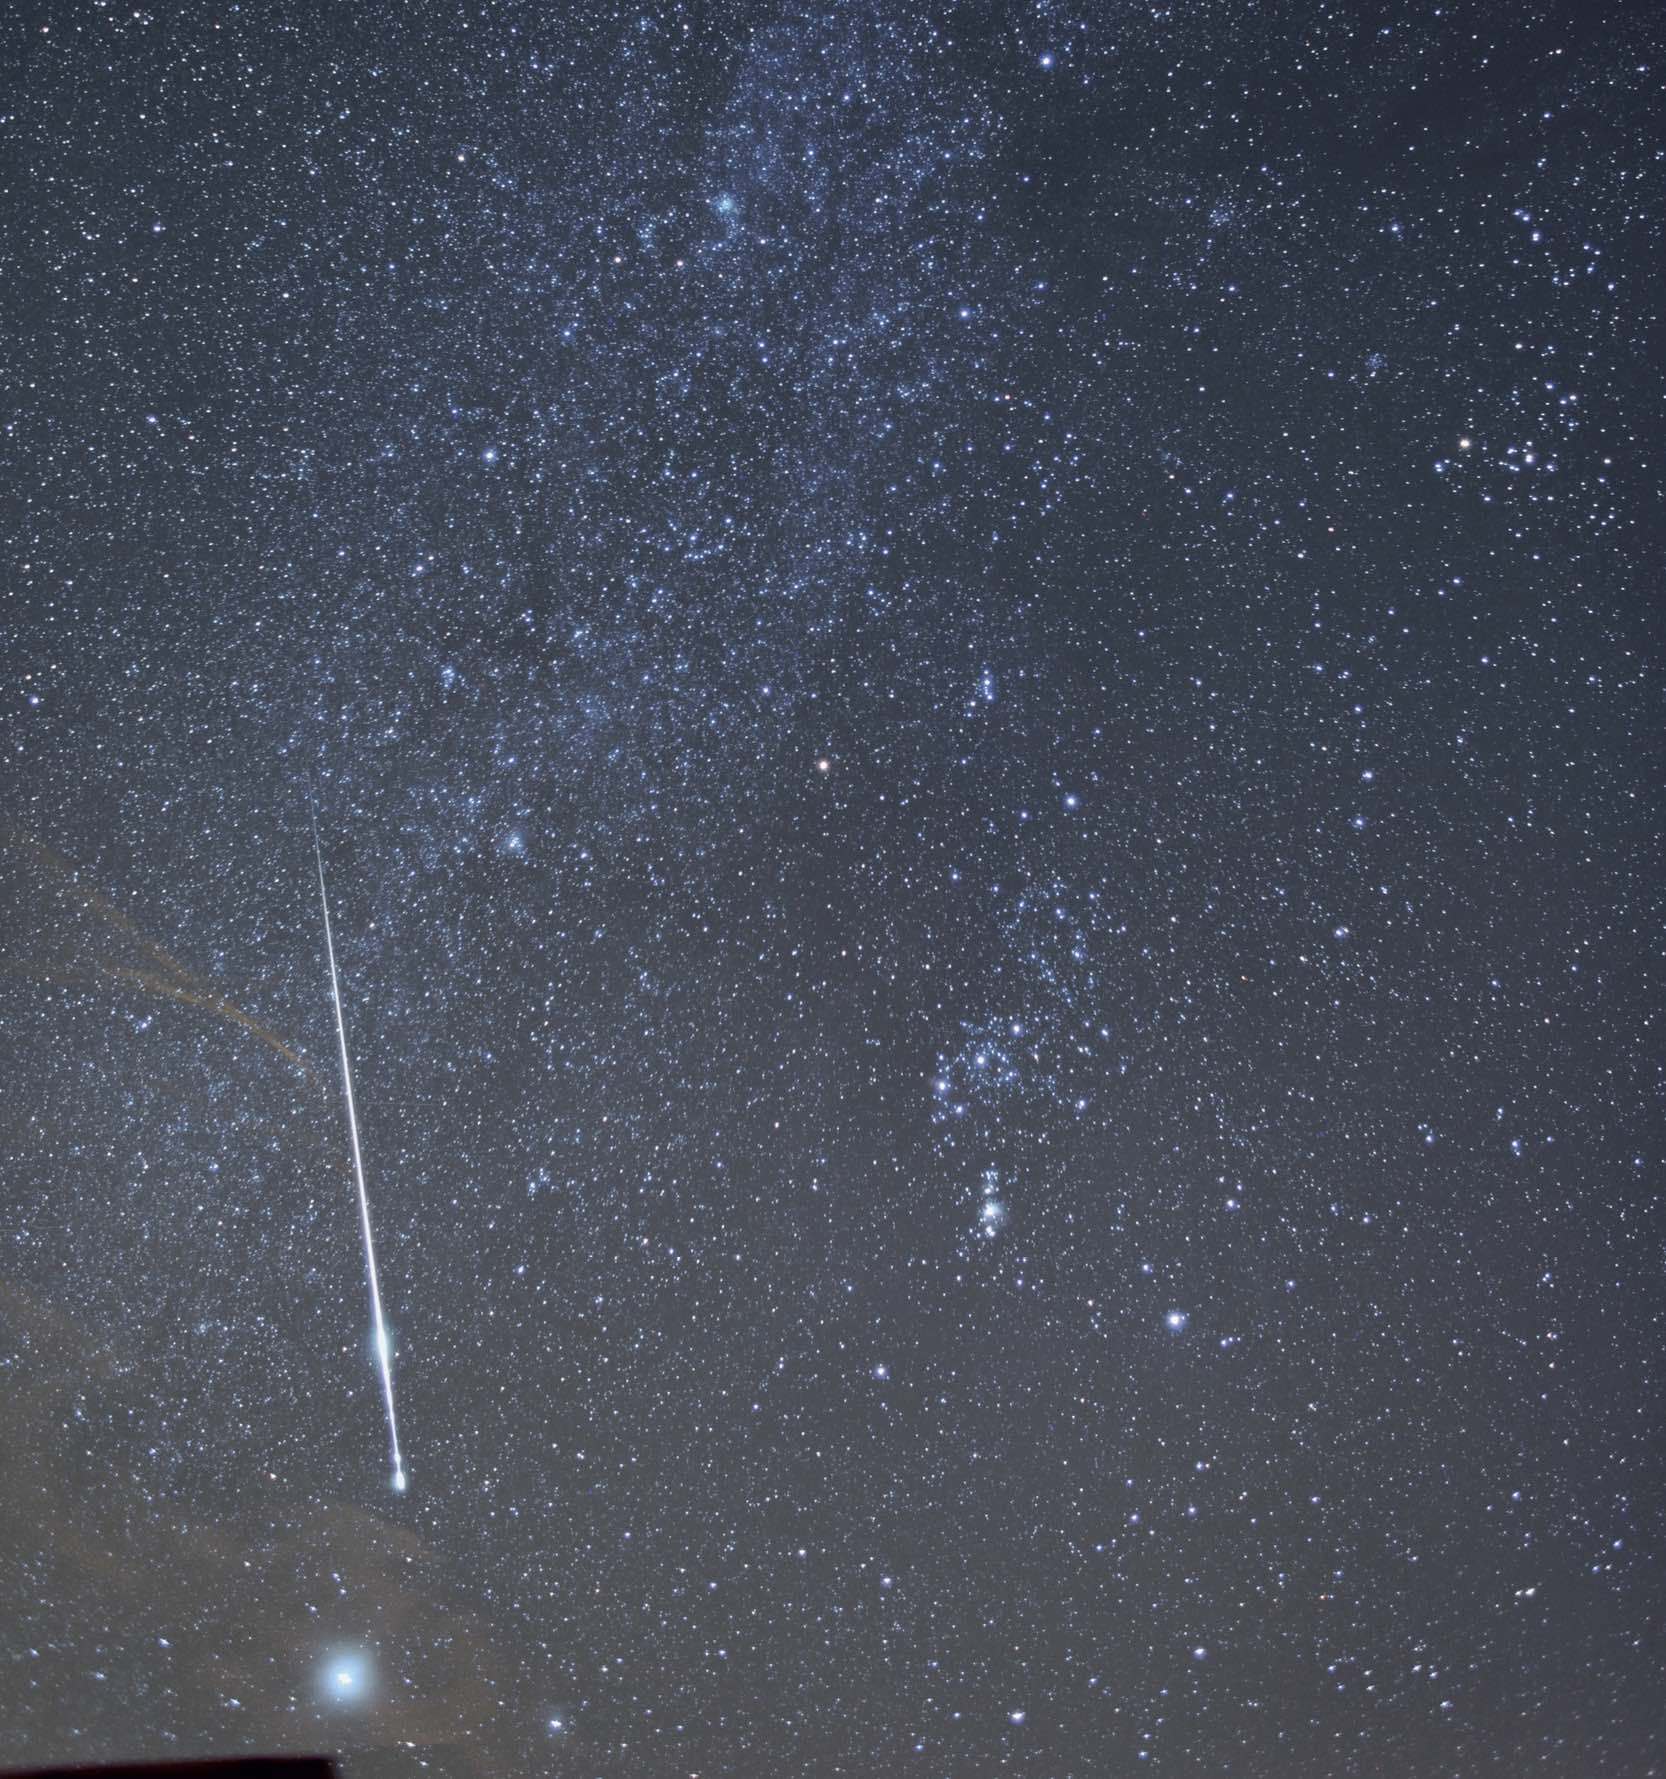 Un meteor foarte strălucitor în constelația Orion. Acesta a lăsat în urmă chiar și o mică „dâră de fum“, încă vizibilă în următoarele fotografii din serie. Parametrii fotografiei: Canon EOS 5D Mk II la ISO 800, distanță focală de 24 mm și diafragmă f/2,2. M. Weigand